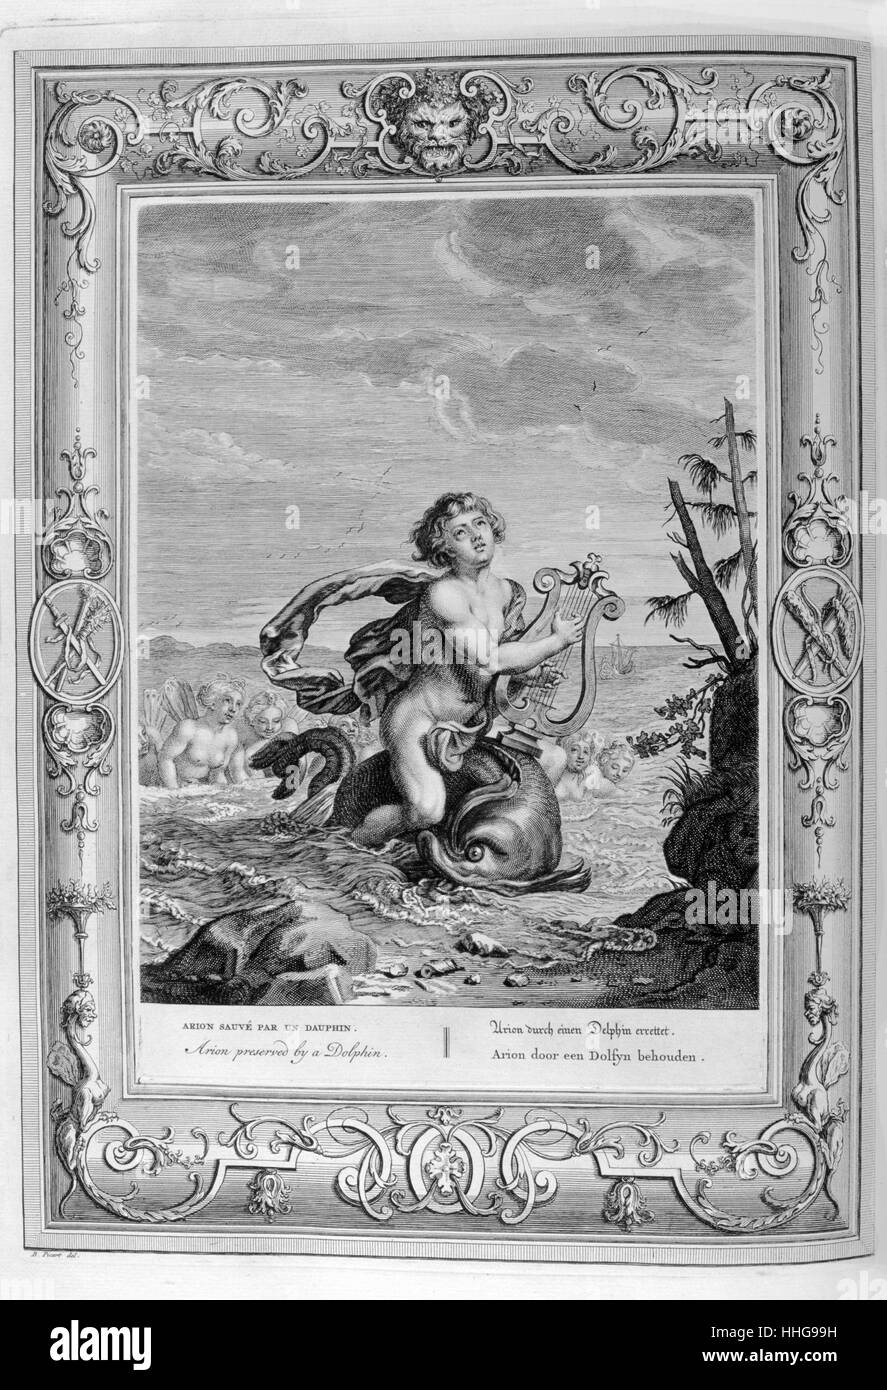 Arion auf dem Dolphin. Gravur, Jason und der Argonuats. Gravierte Darstellung von der "Tempel der Musen", 1733. Dieses Buch vertreten bemerkenswerte Ereignisse der Antike erstellt und von Bernard Picart graviert (1673-1733). Stockfoto